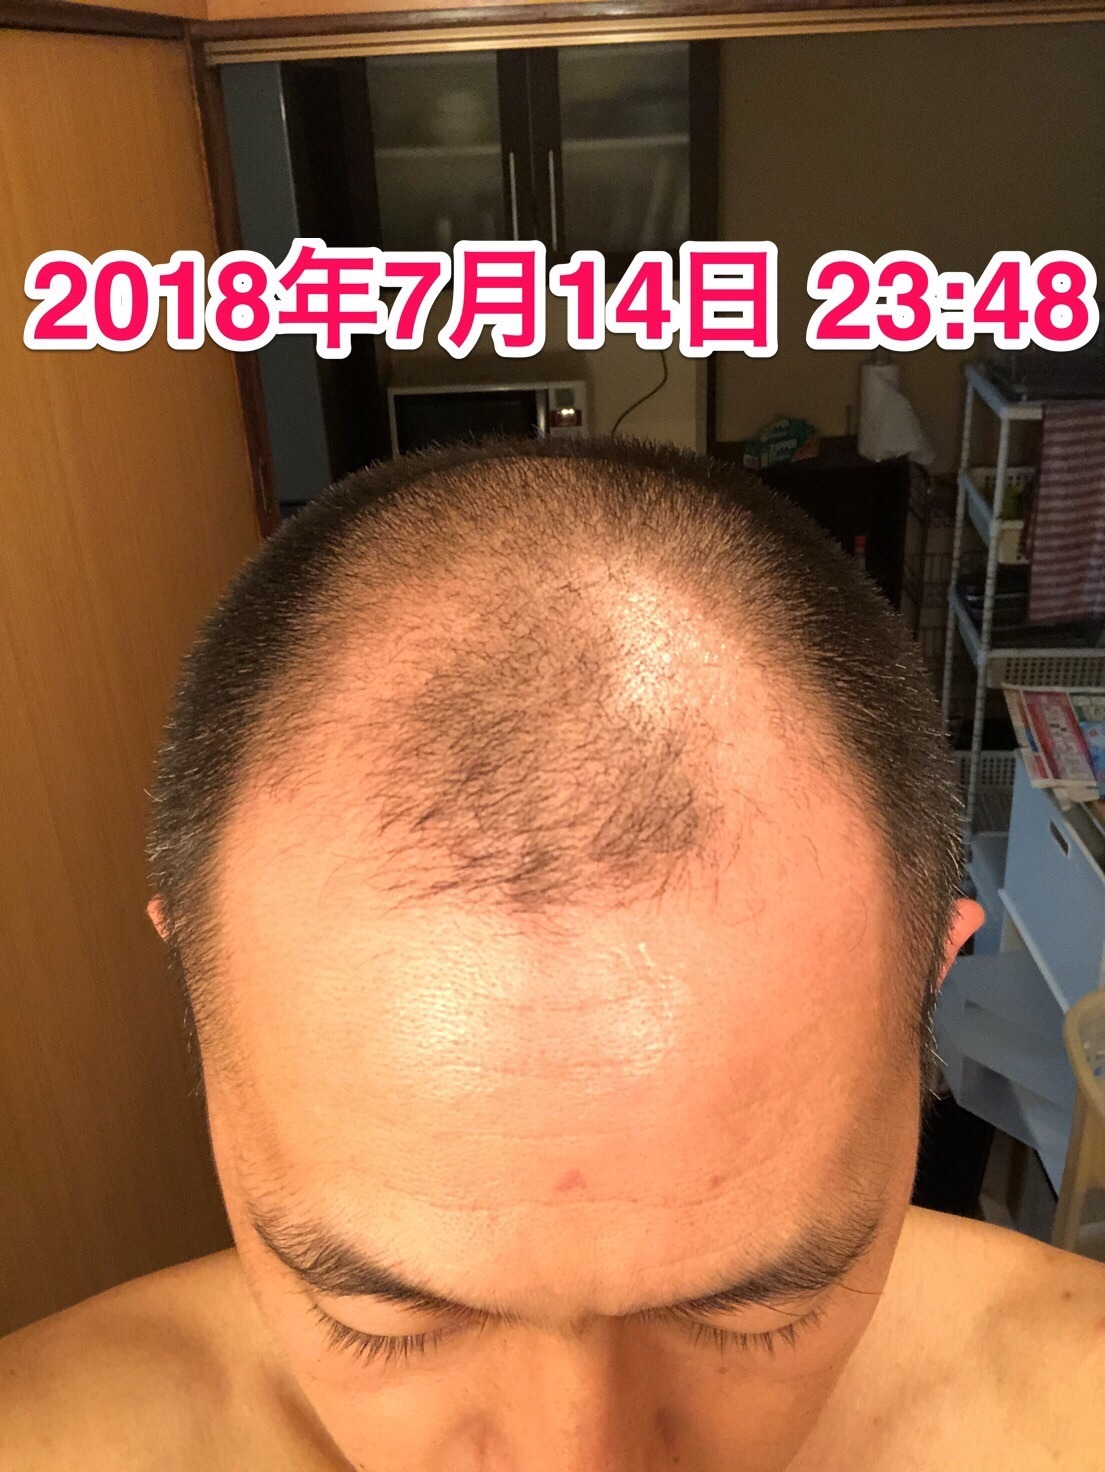 40代オヤジの頭髪を経過観察するブログ 18年7月14日 リアップ使用から約半年